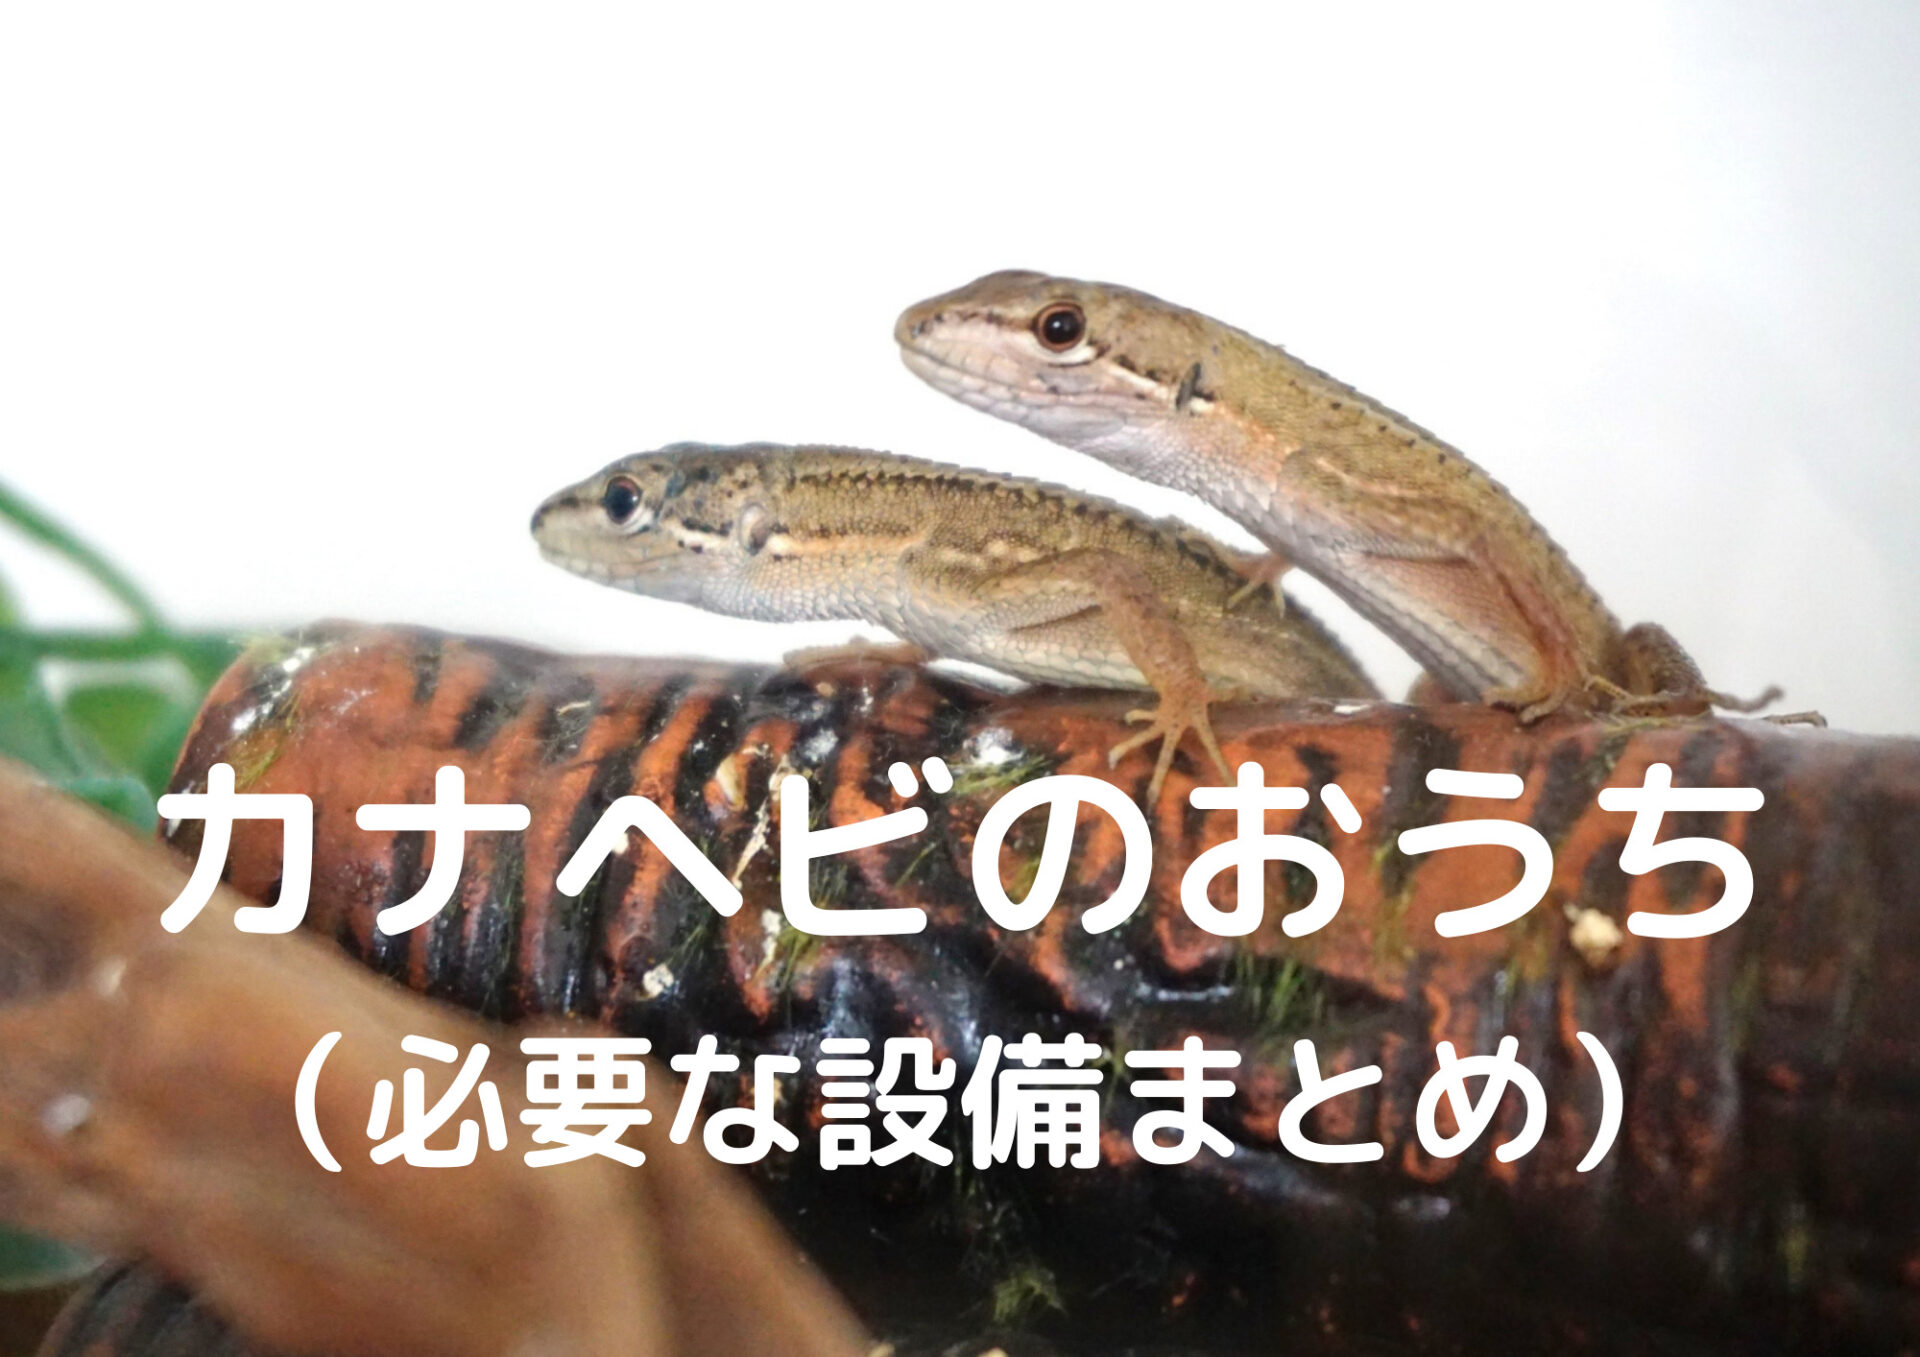 カナヘビ トカゲ 爬虫類 飼育セット - 爬虫類/両生類用品